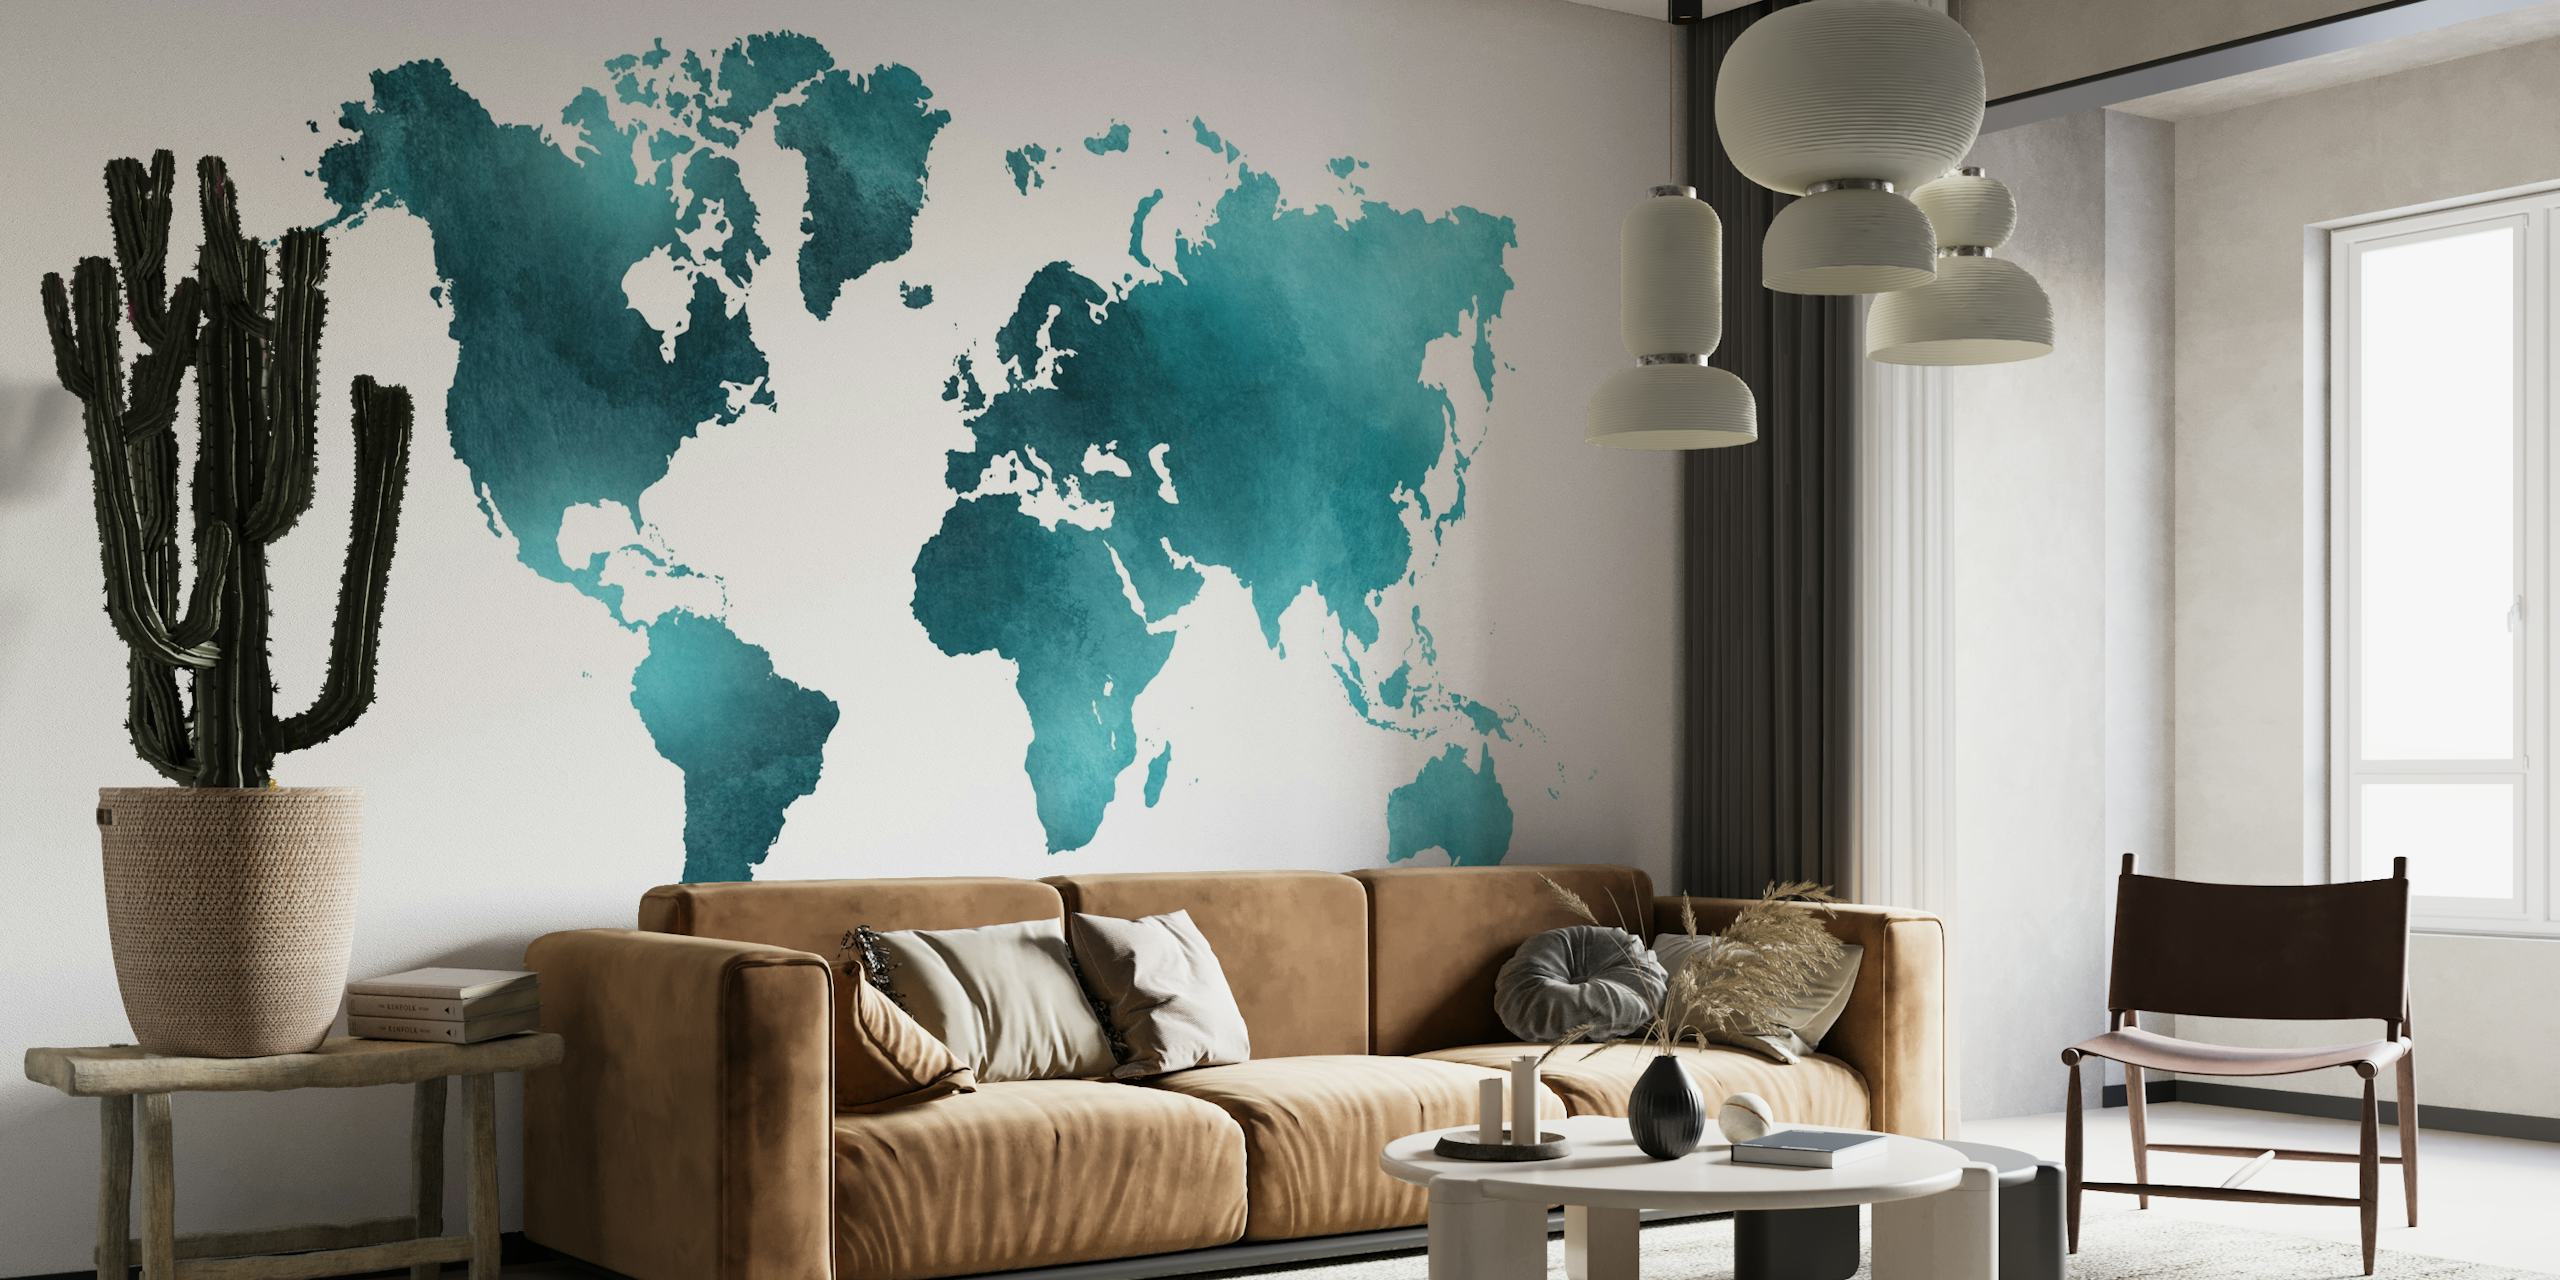 Fototapete mit blaugrüner und türkisfarbener Weltkarte